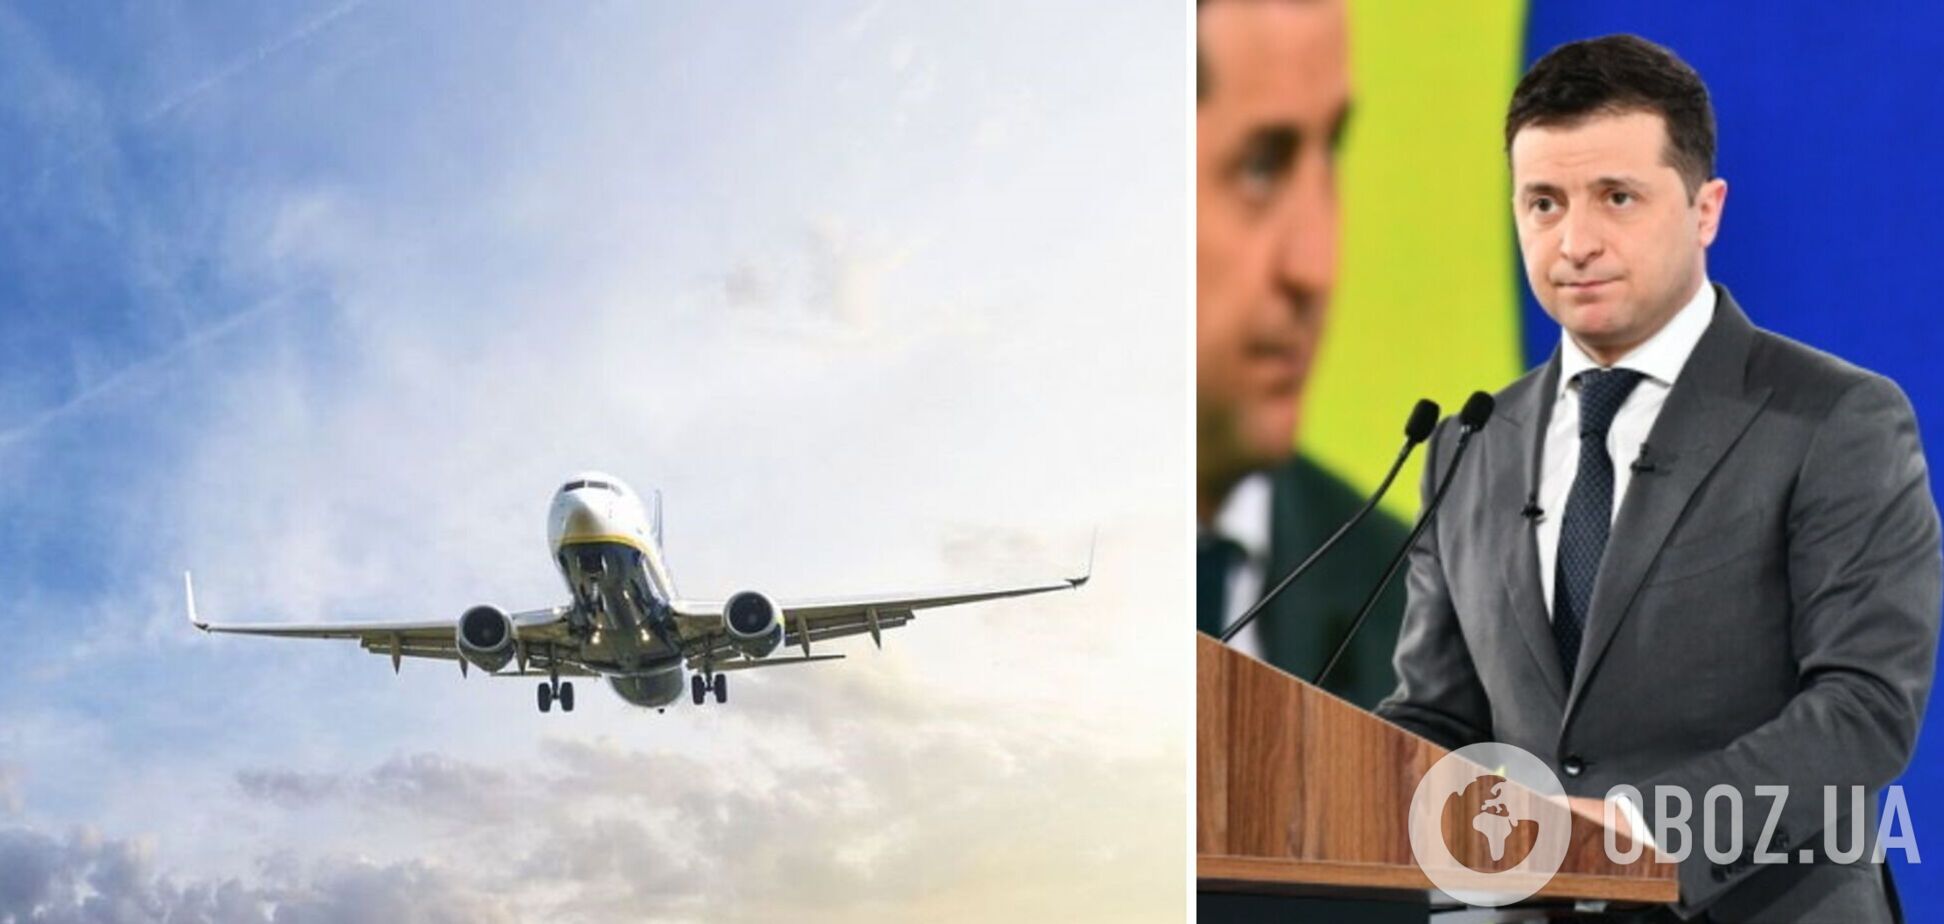 Эксперты назвали три причины создания национальной авиакомпании по программе 'Большая стройка'